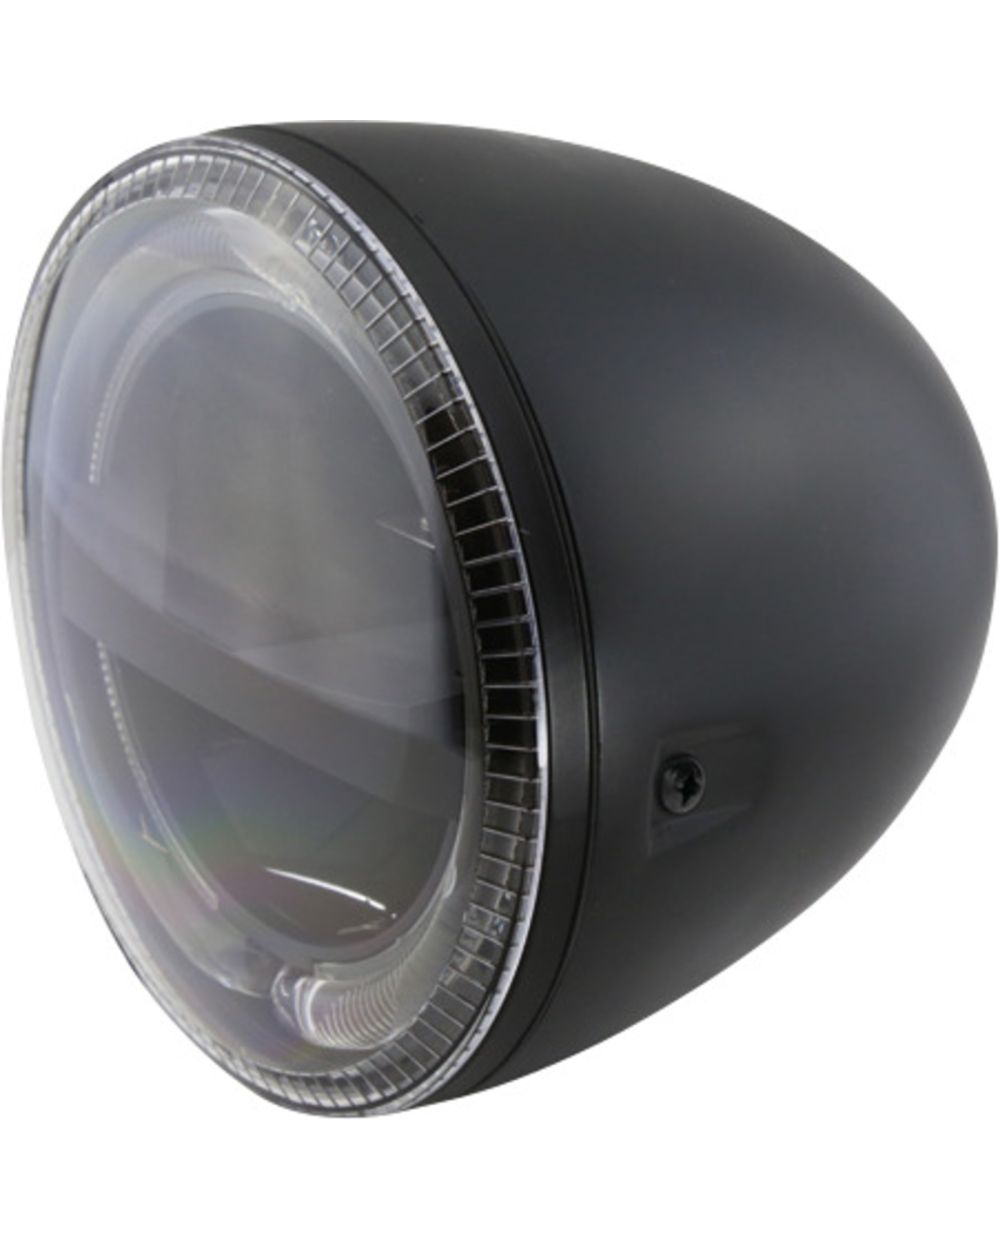 LED-Scheinwerfer 5 3/4', Leuchtring mit Tagfahr- und Standlicht, schwarzes  Metallgehäuse, seitliche Befestigung, Abm. ca. Tiefe 167mm, Einsatz-DM